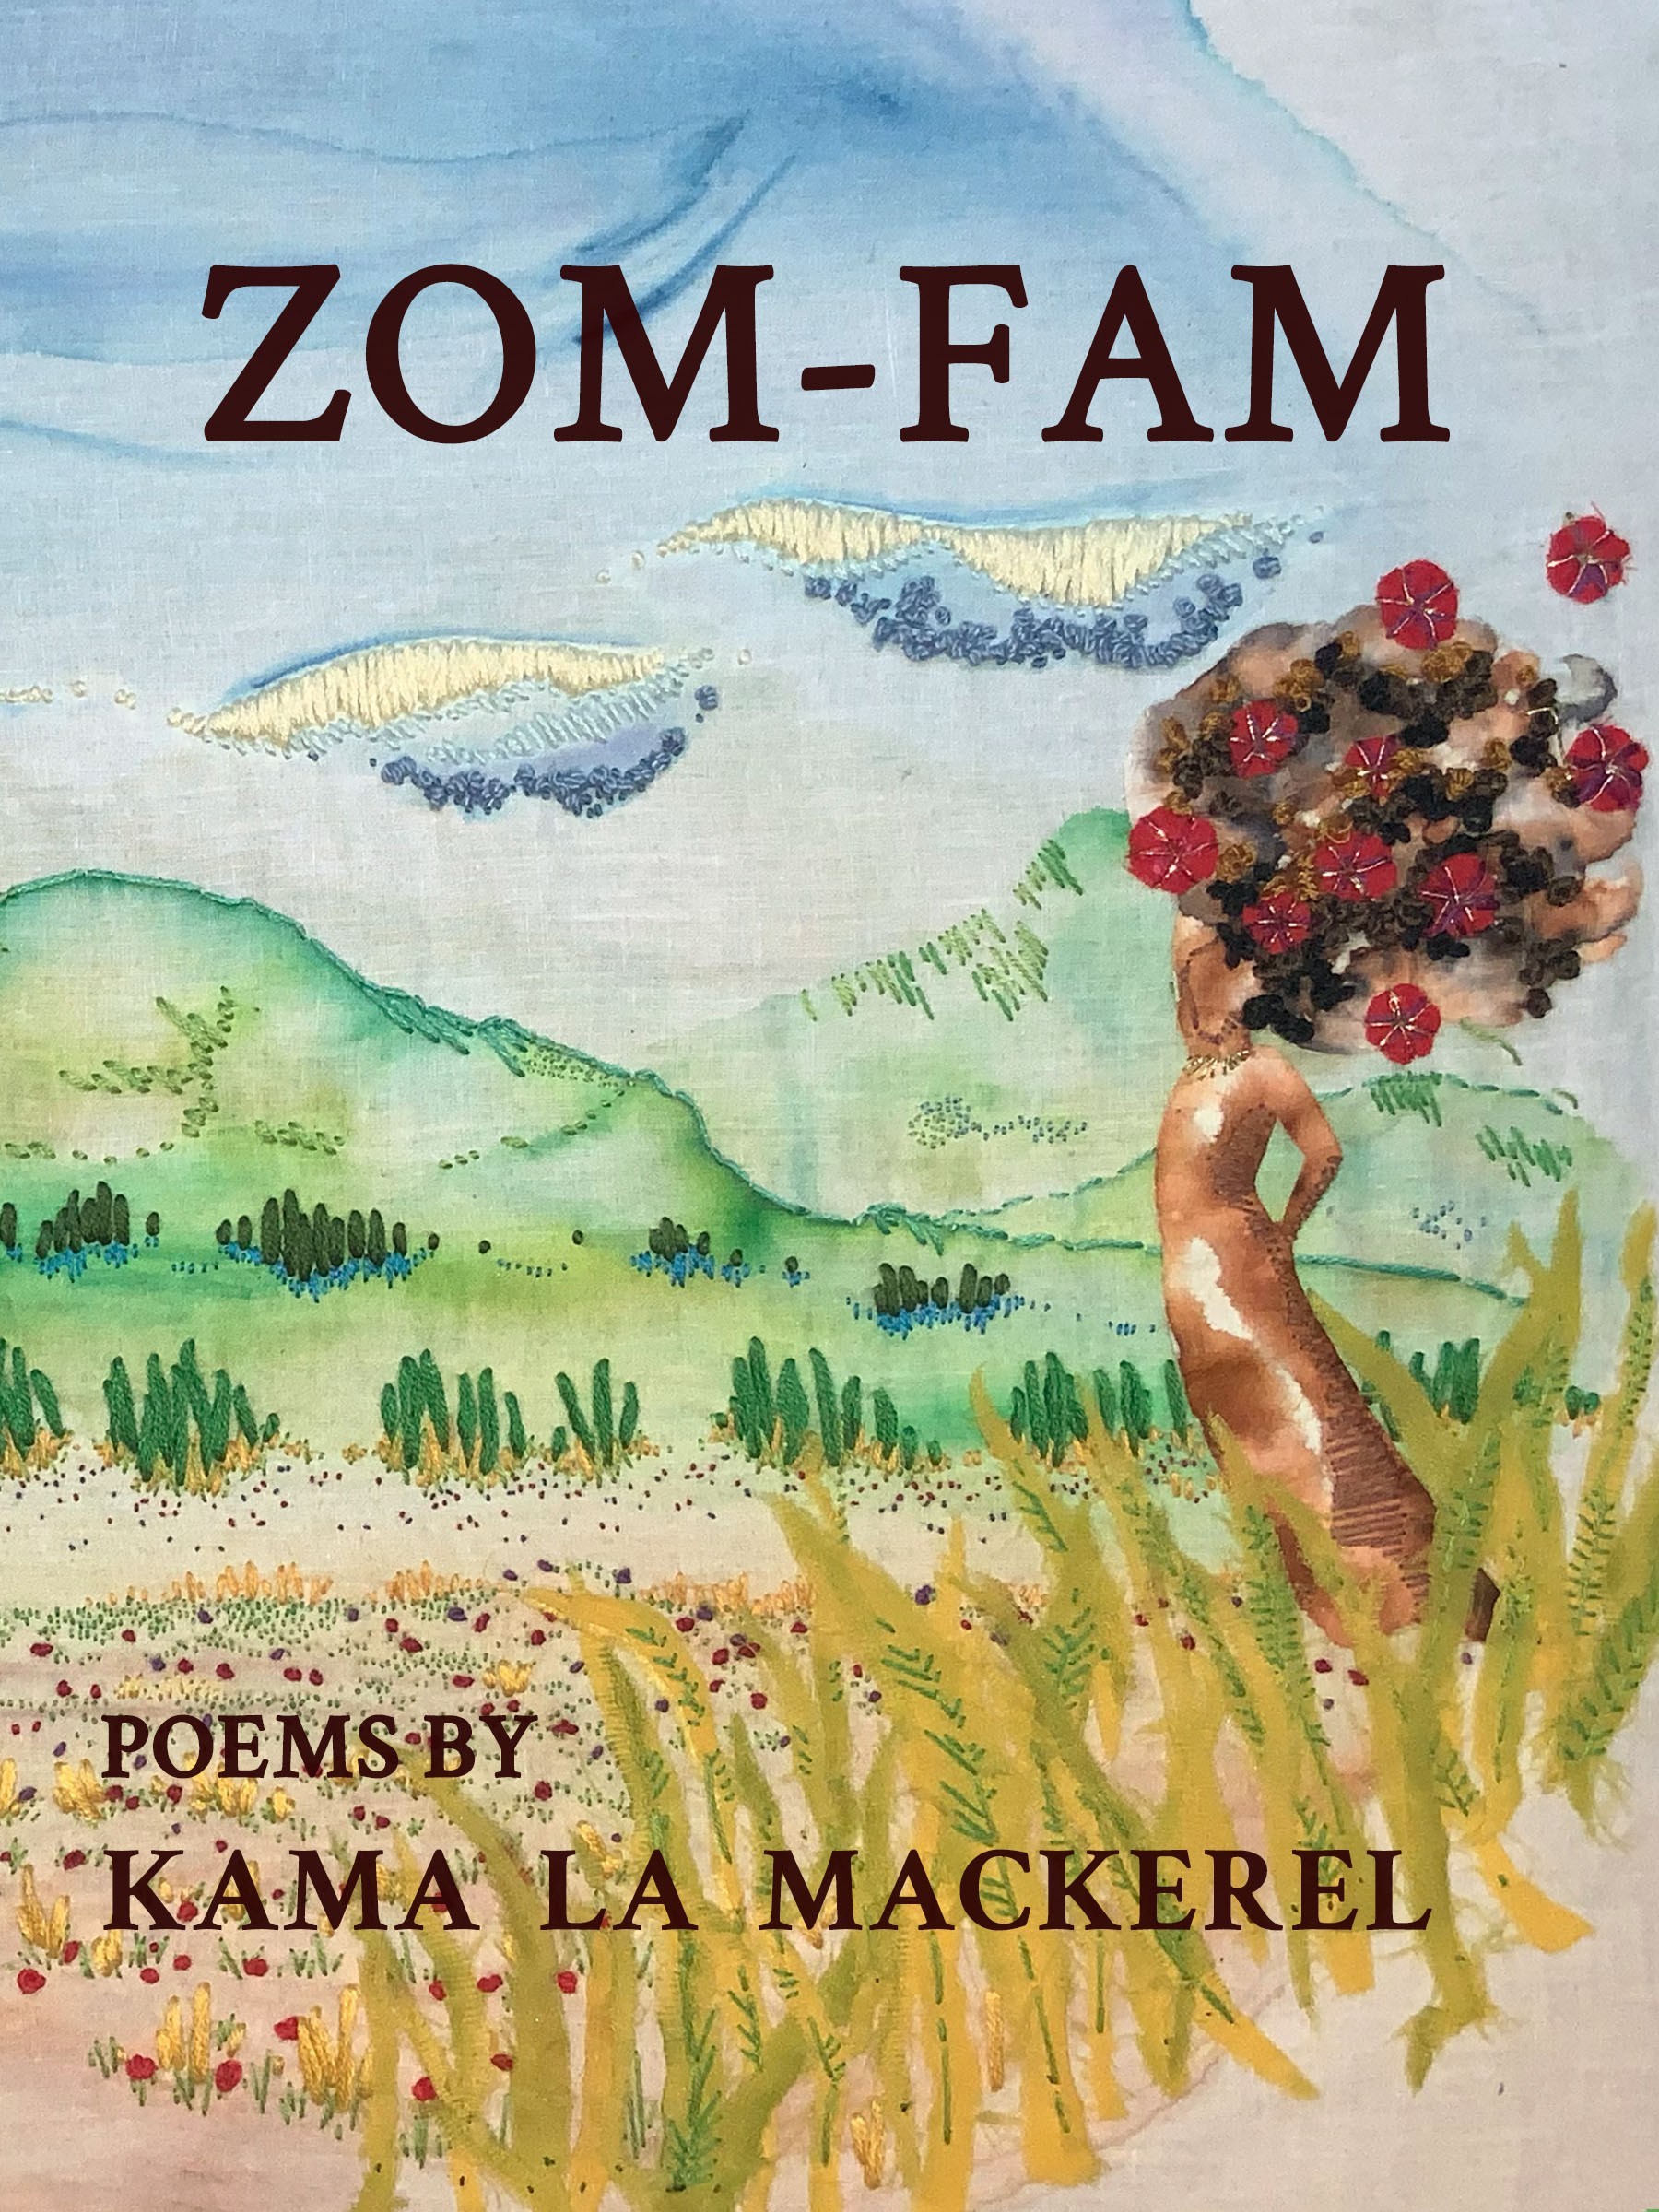 ZOM-FAM: Interview with Kama La Mackerel